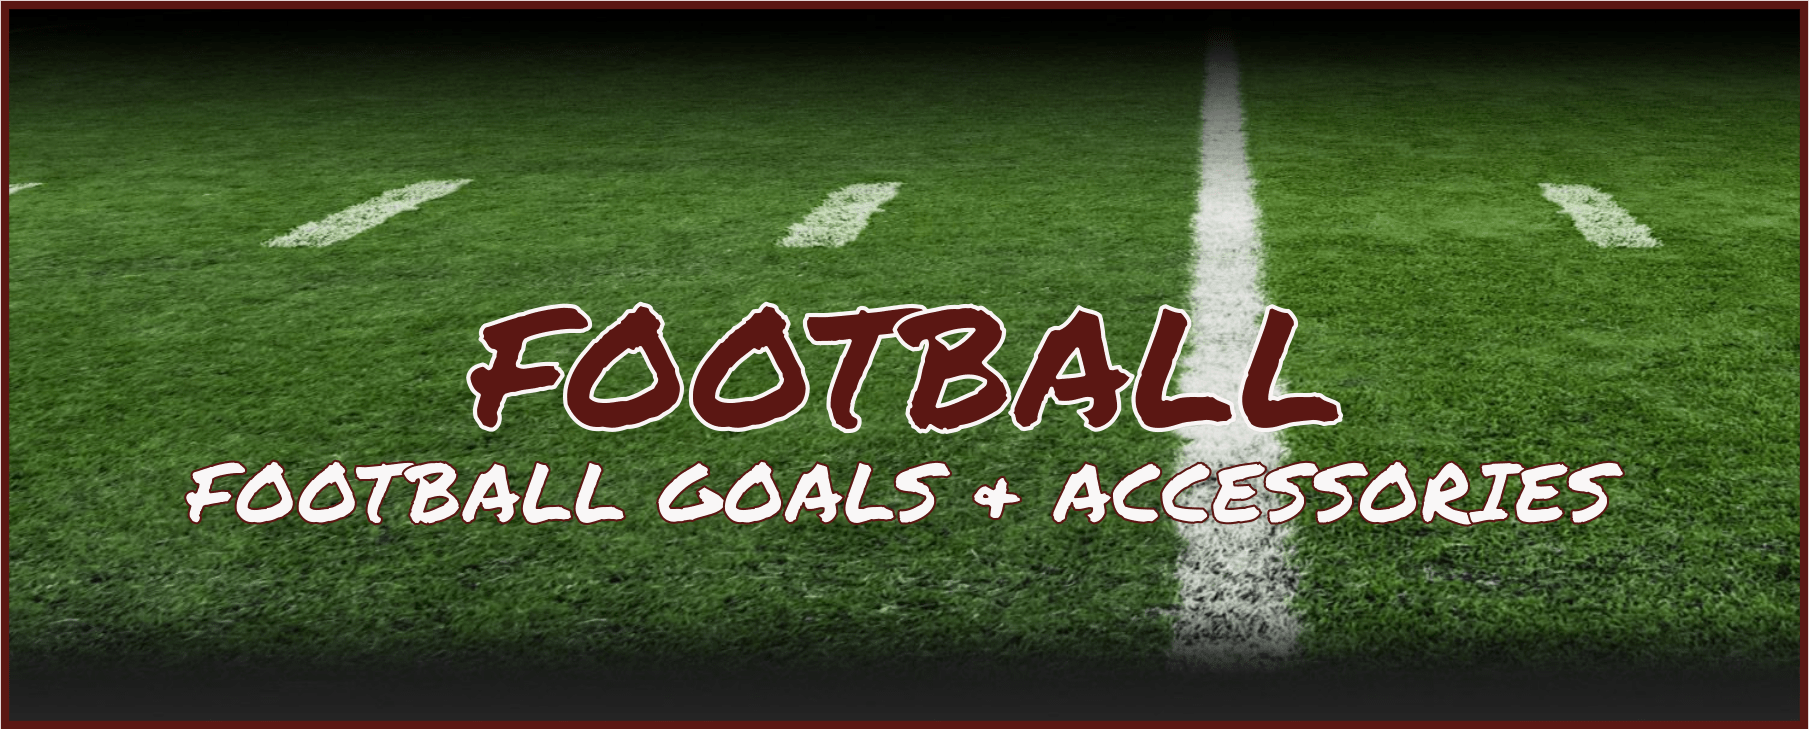 Goals4Sports Football Banner